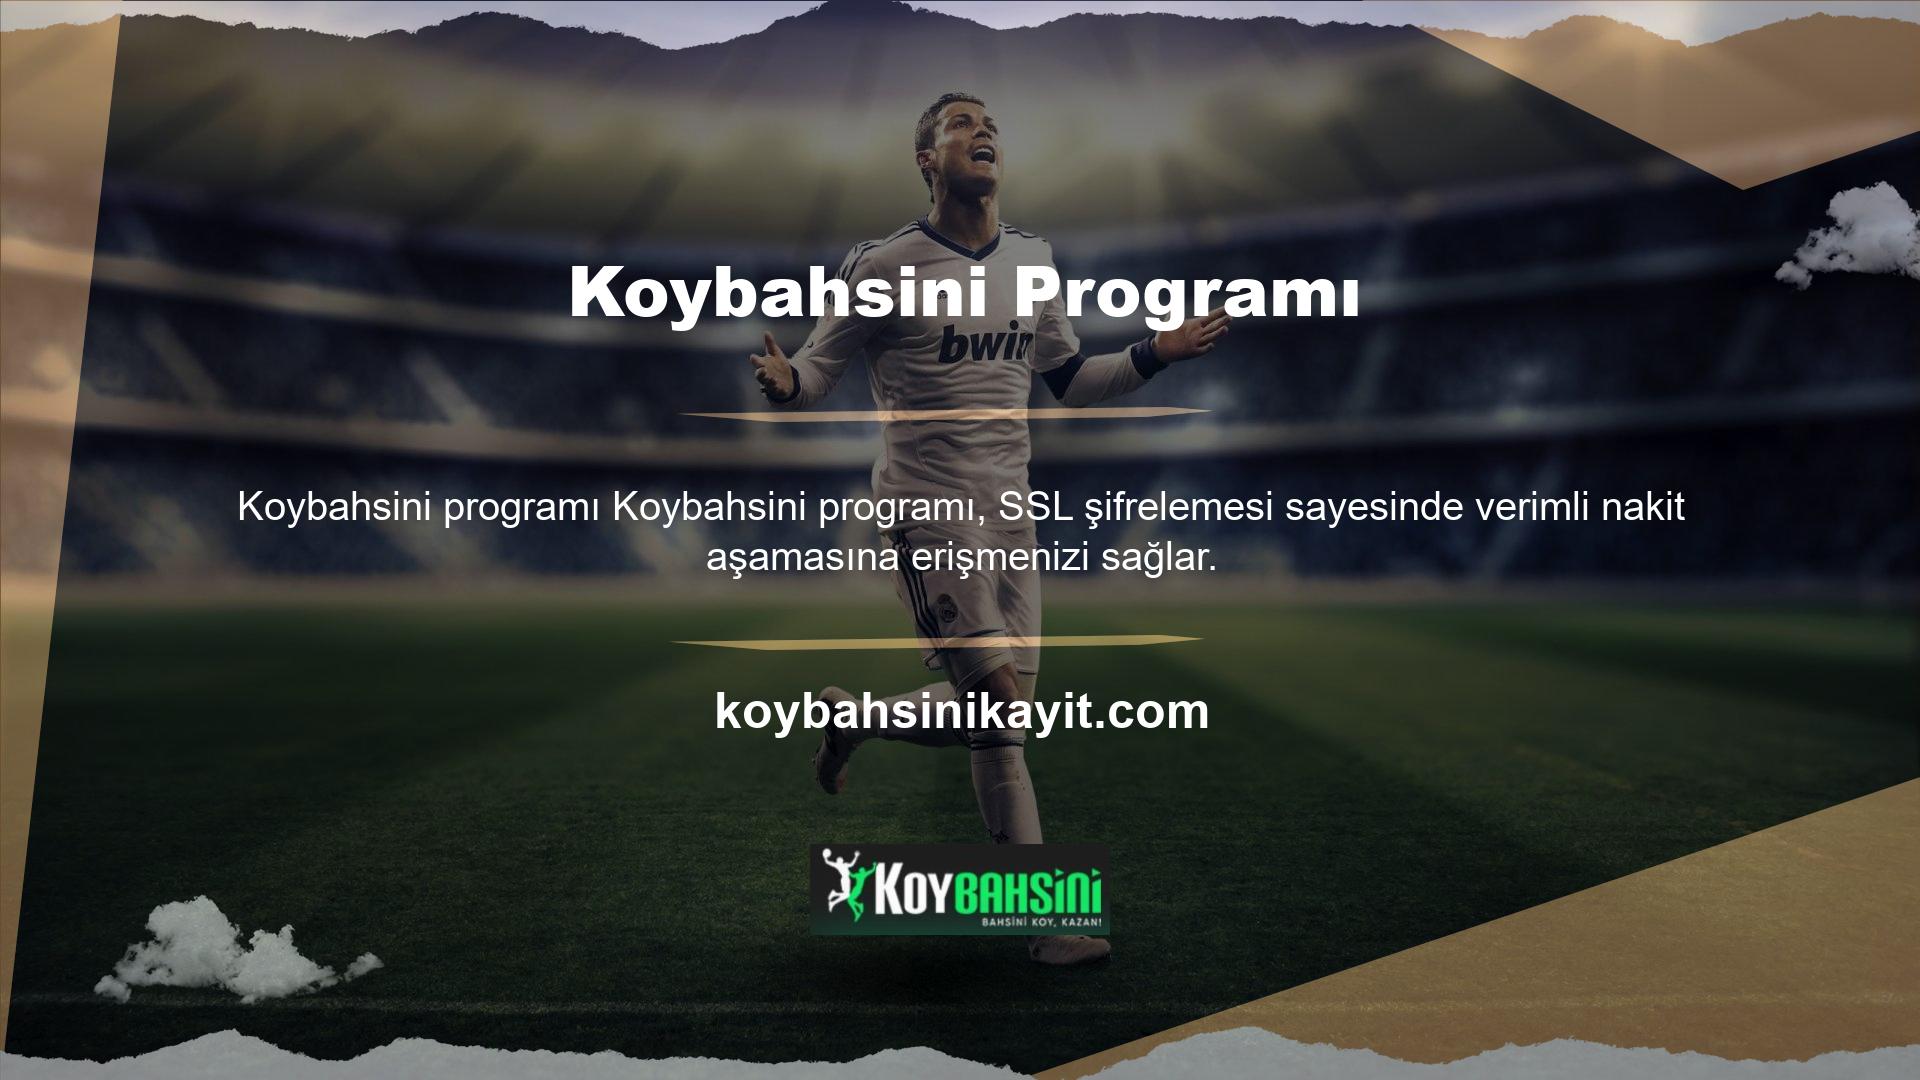 Sitenin Koybahsini etkileşimlerine ilişkin akış şeması da güvenilir bir temsildir